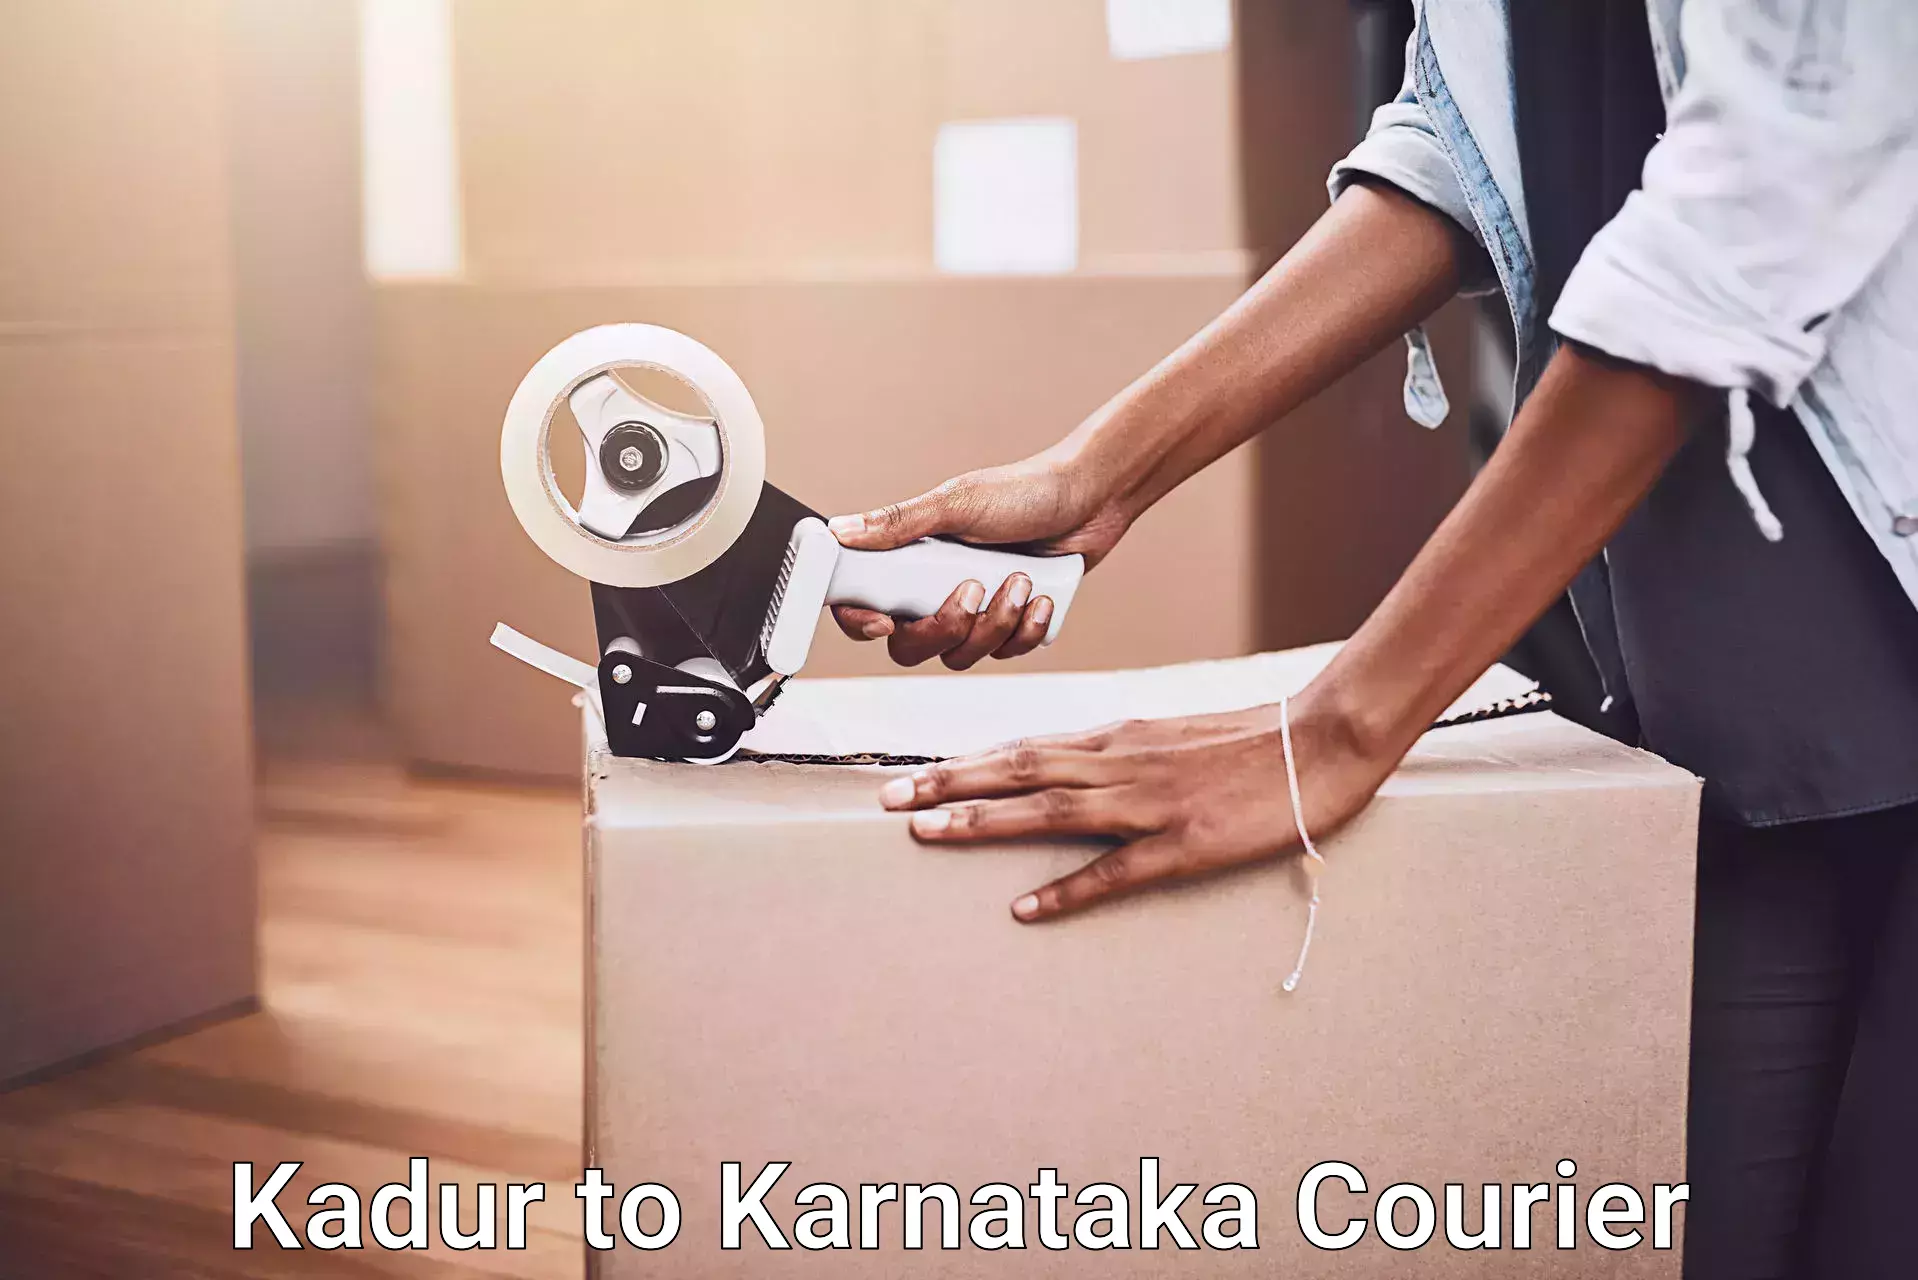 Household goods movers Kadur to Karnataka